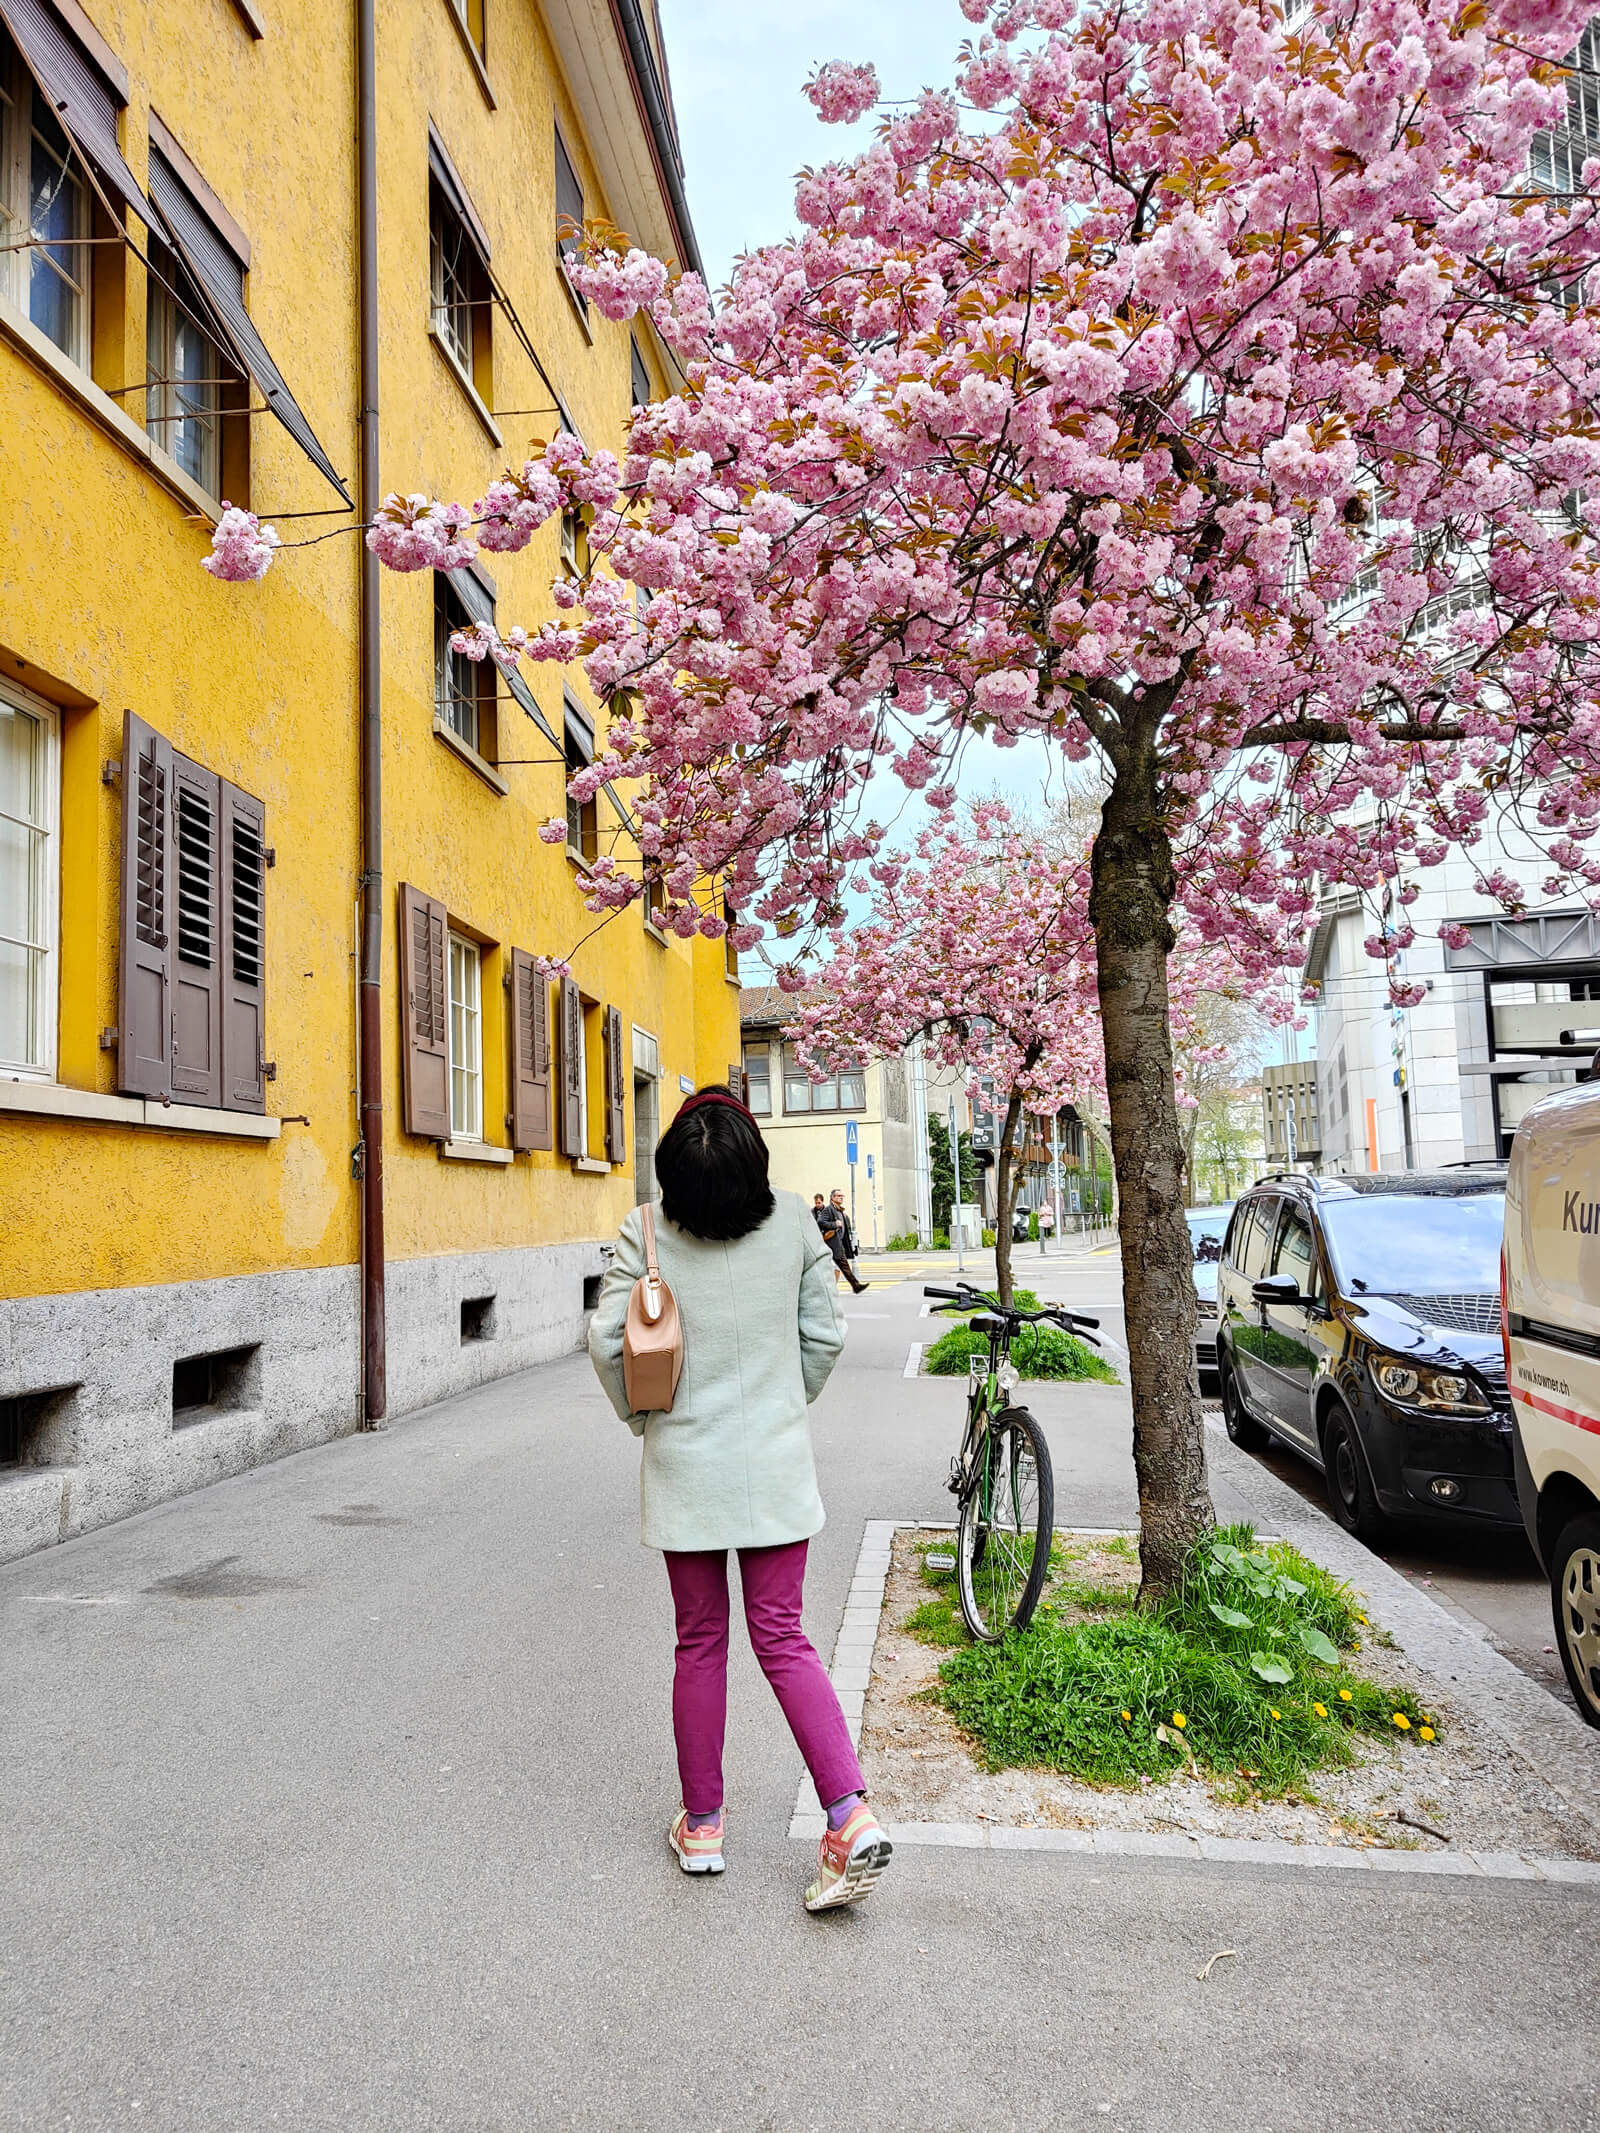 Cherry Blossoms at Gasometerstrasse in Zurich